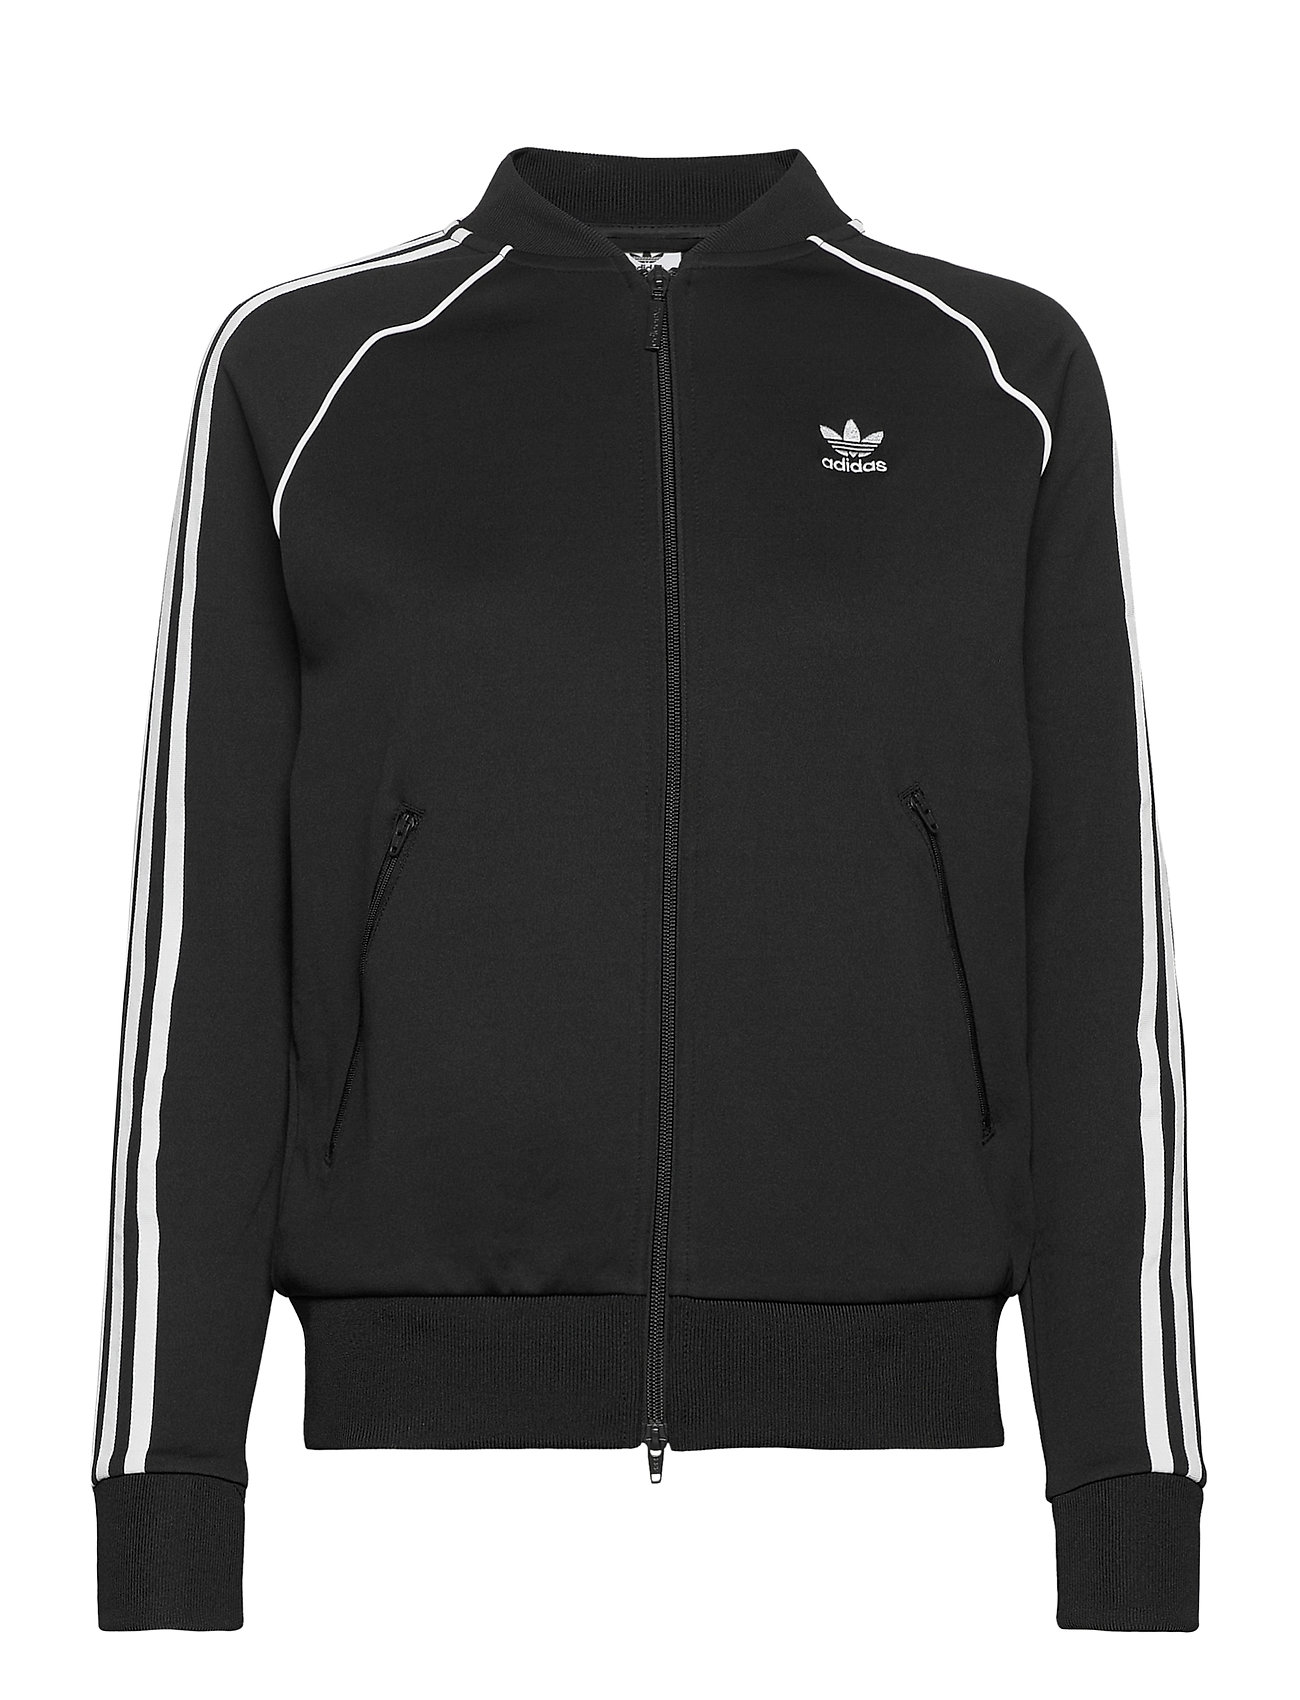 Primeblue Sst Track Jacket W Svetari Collegepaita Musta Adidas Originals, adidas Originals